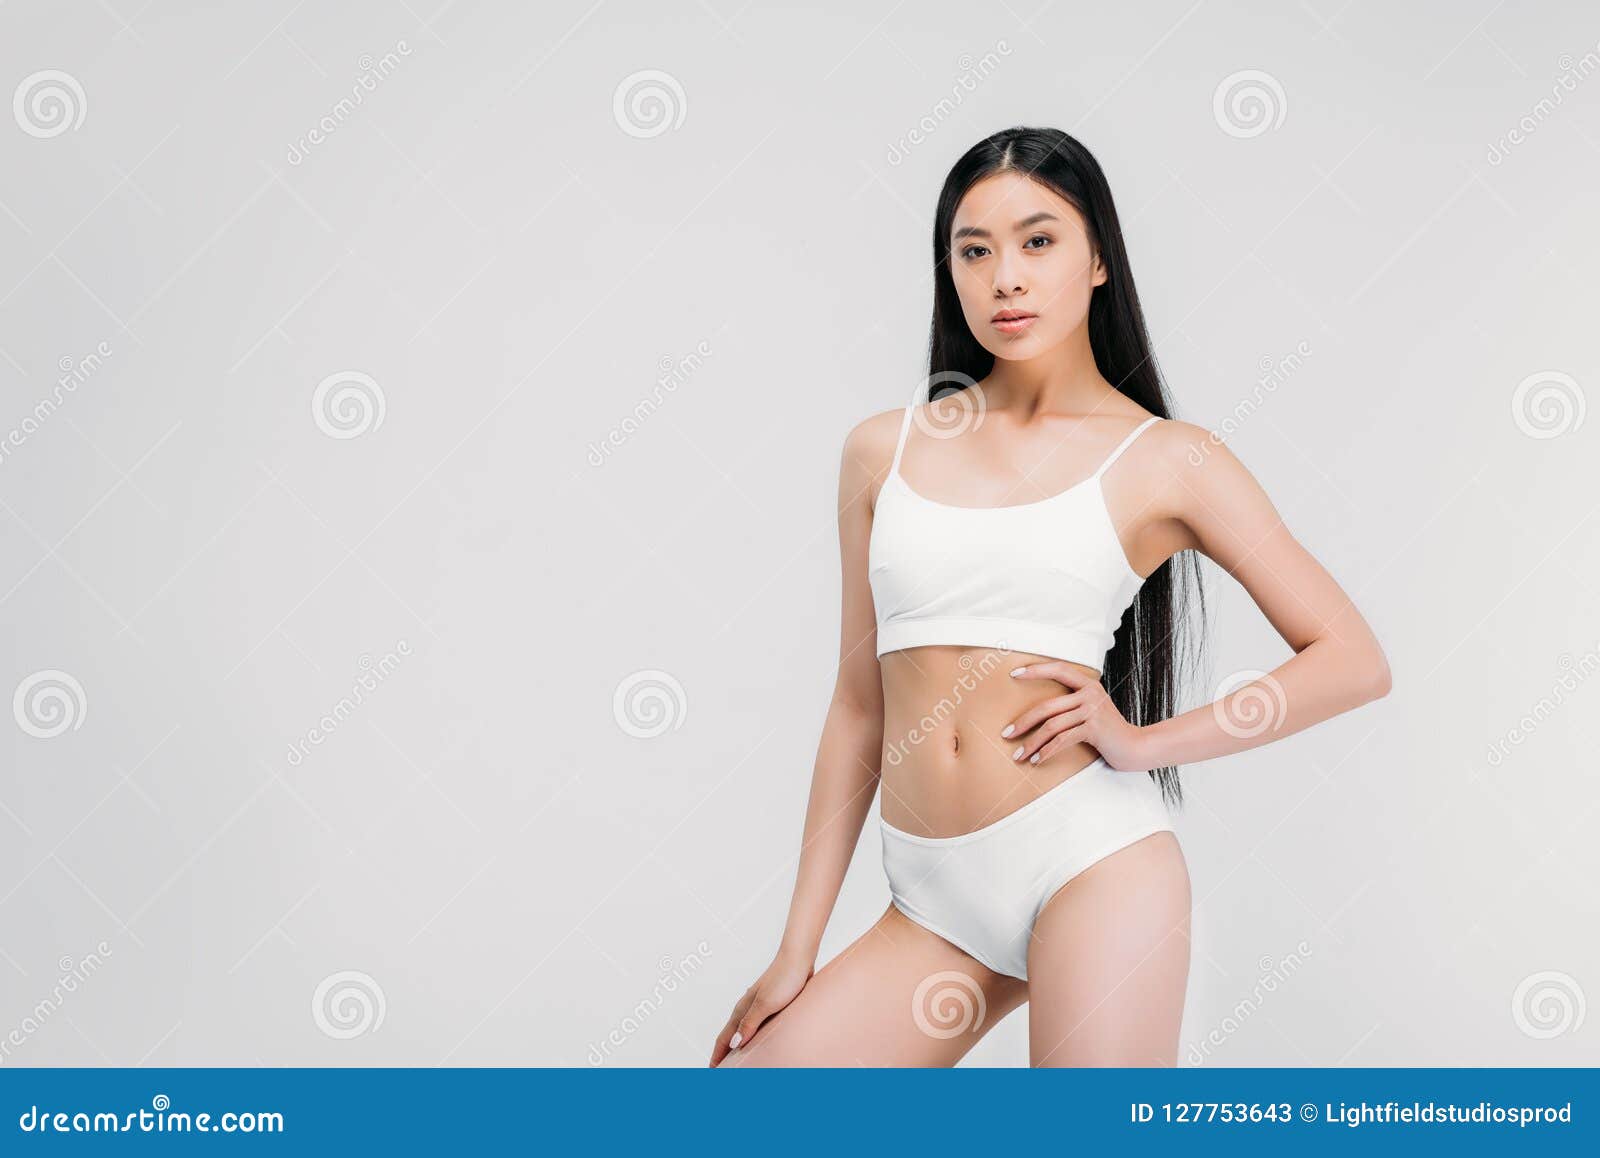 dmitry korneev recommends asian woman in panties pic